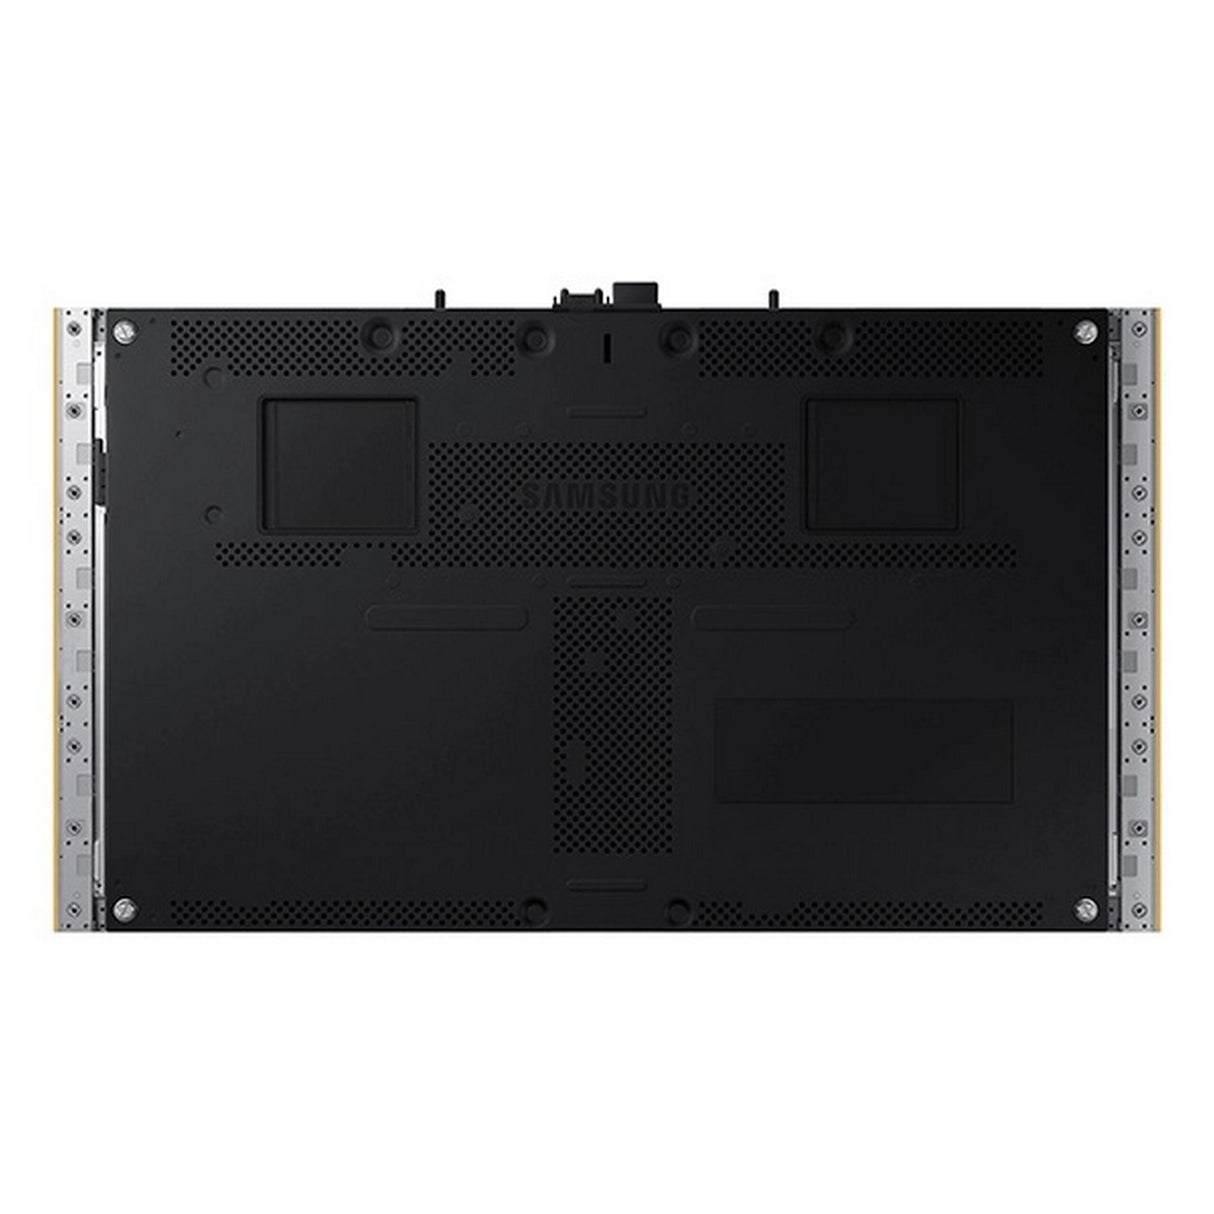 Samsung F-IW012AP219 219 Inch LED Display Bundle